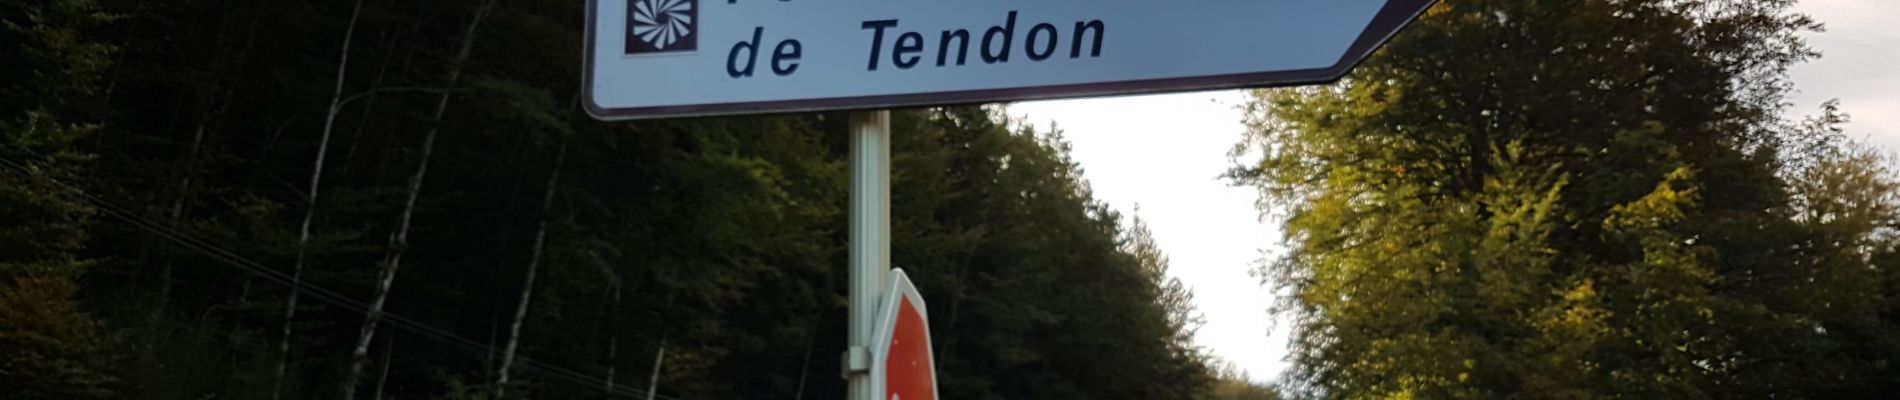 Randonnée Marche Tendon - Cascades de Tendon - Trou de l'Enfer - Roches de la Moulure - Photo